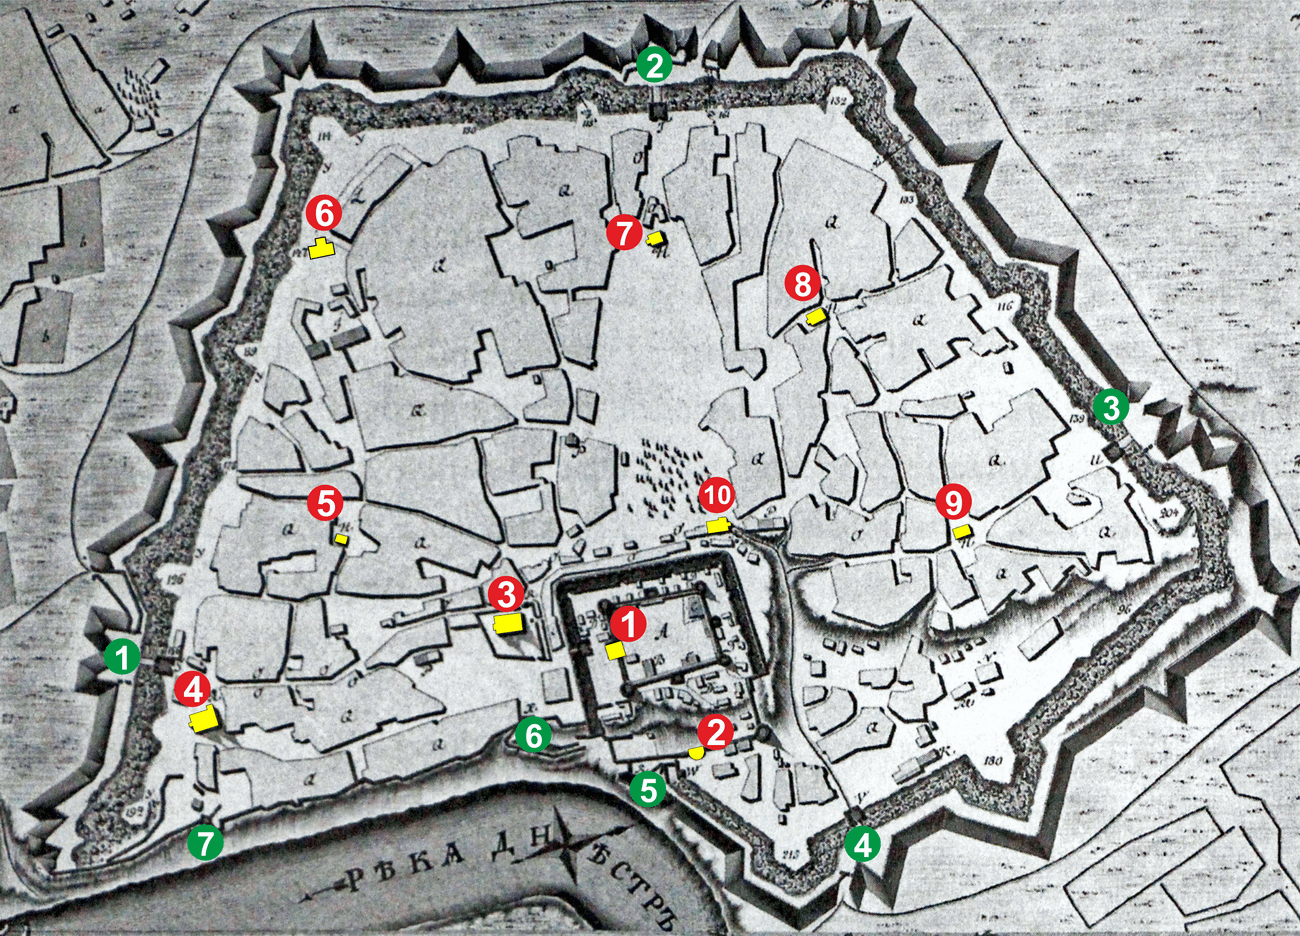  карта 1790 года с выделенными мечетями с привязкой к воротам